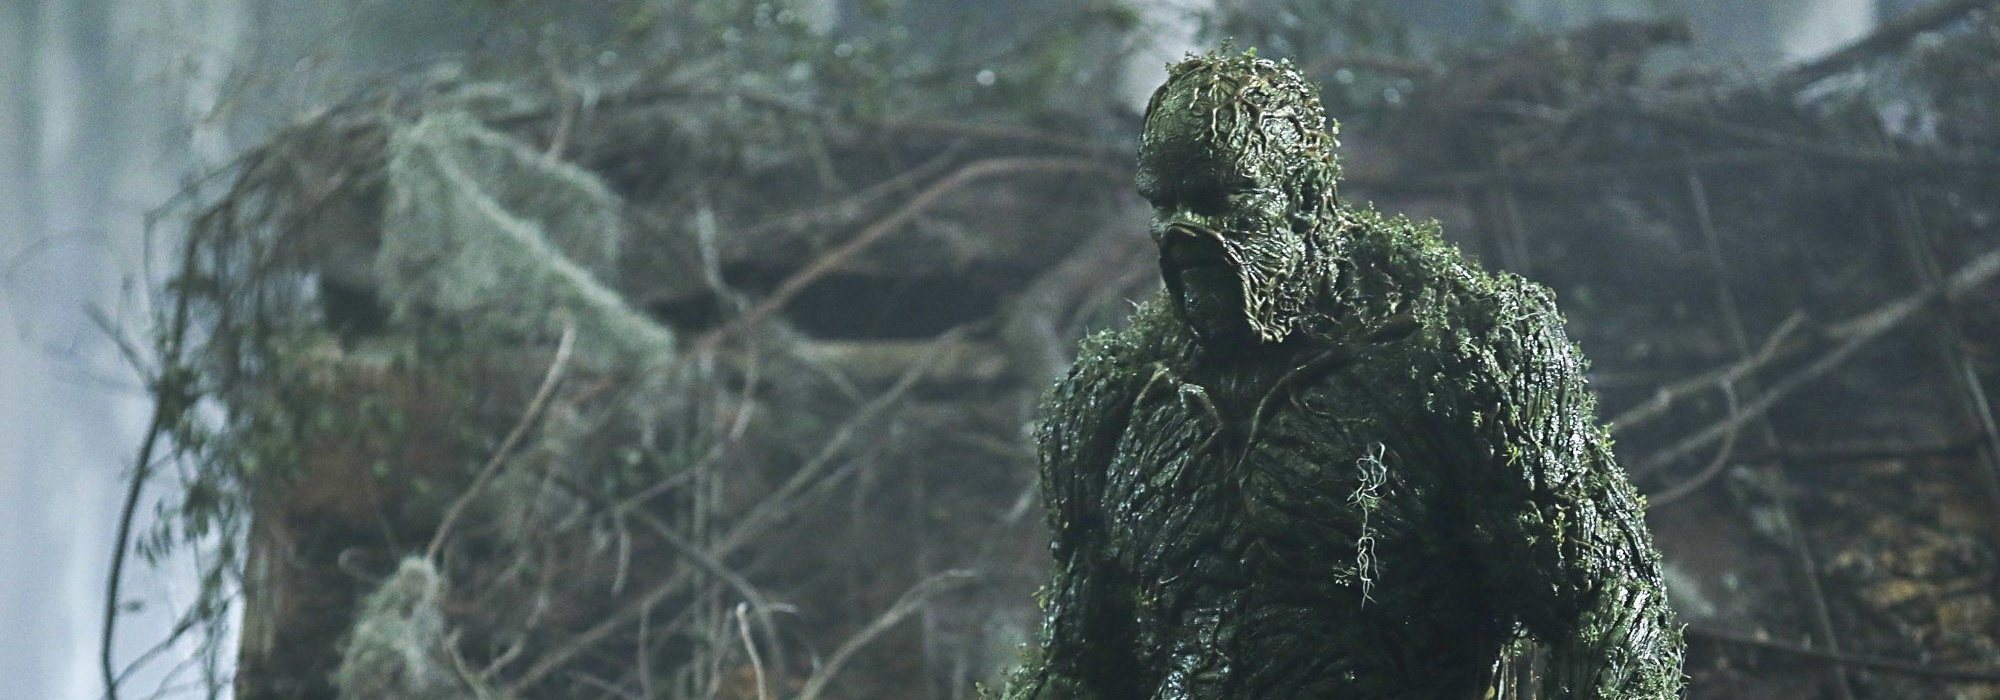 Swamp Thing (La cosa del pantano)